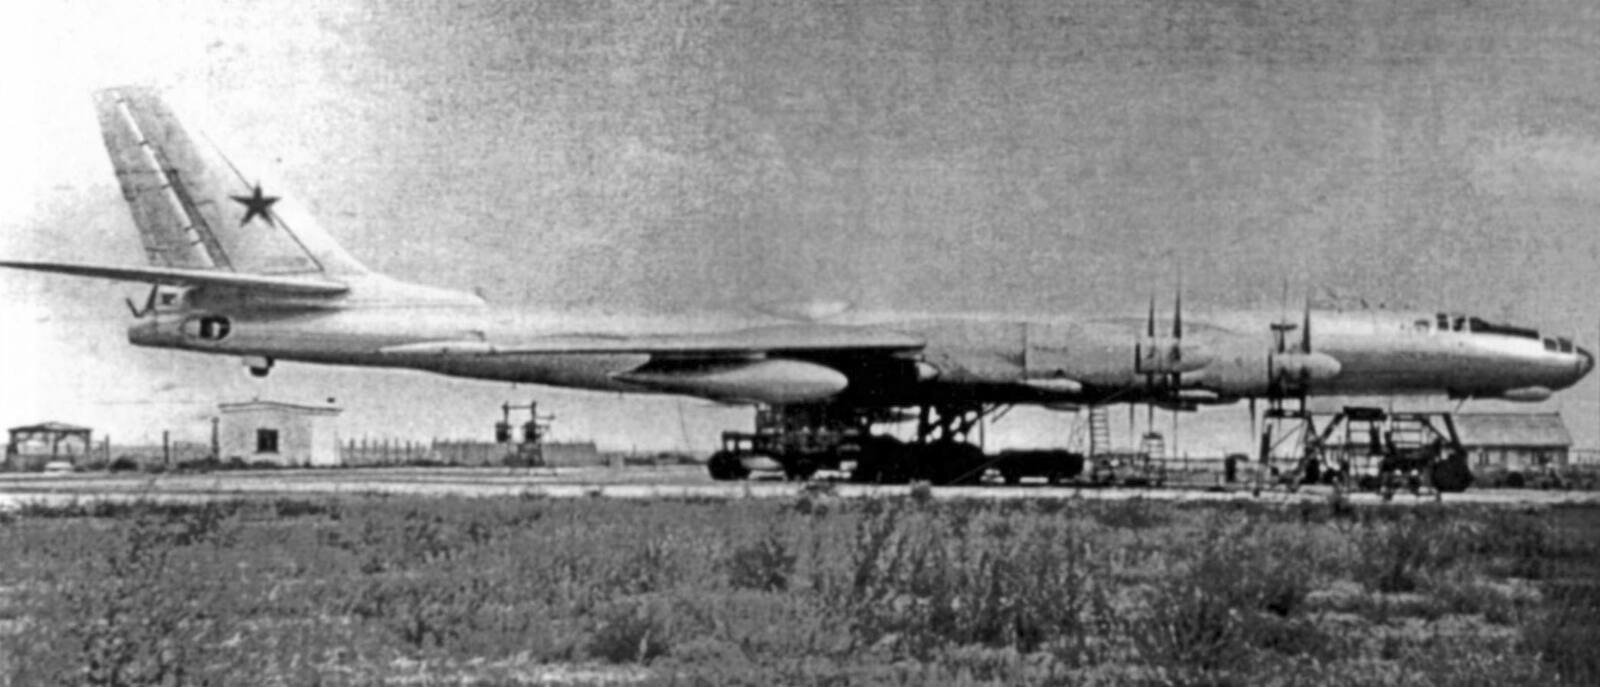 Летающая атомная лаборатория: самолет Ту-95ЛАЛ с ядерным реактором на борту